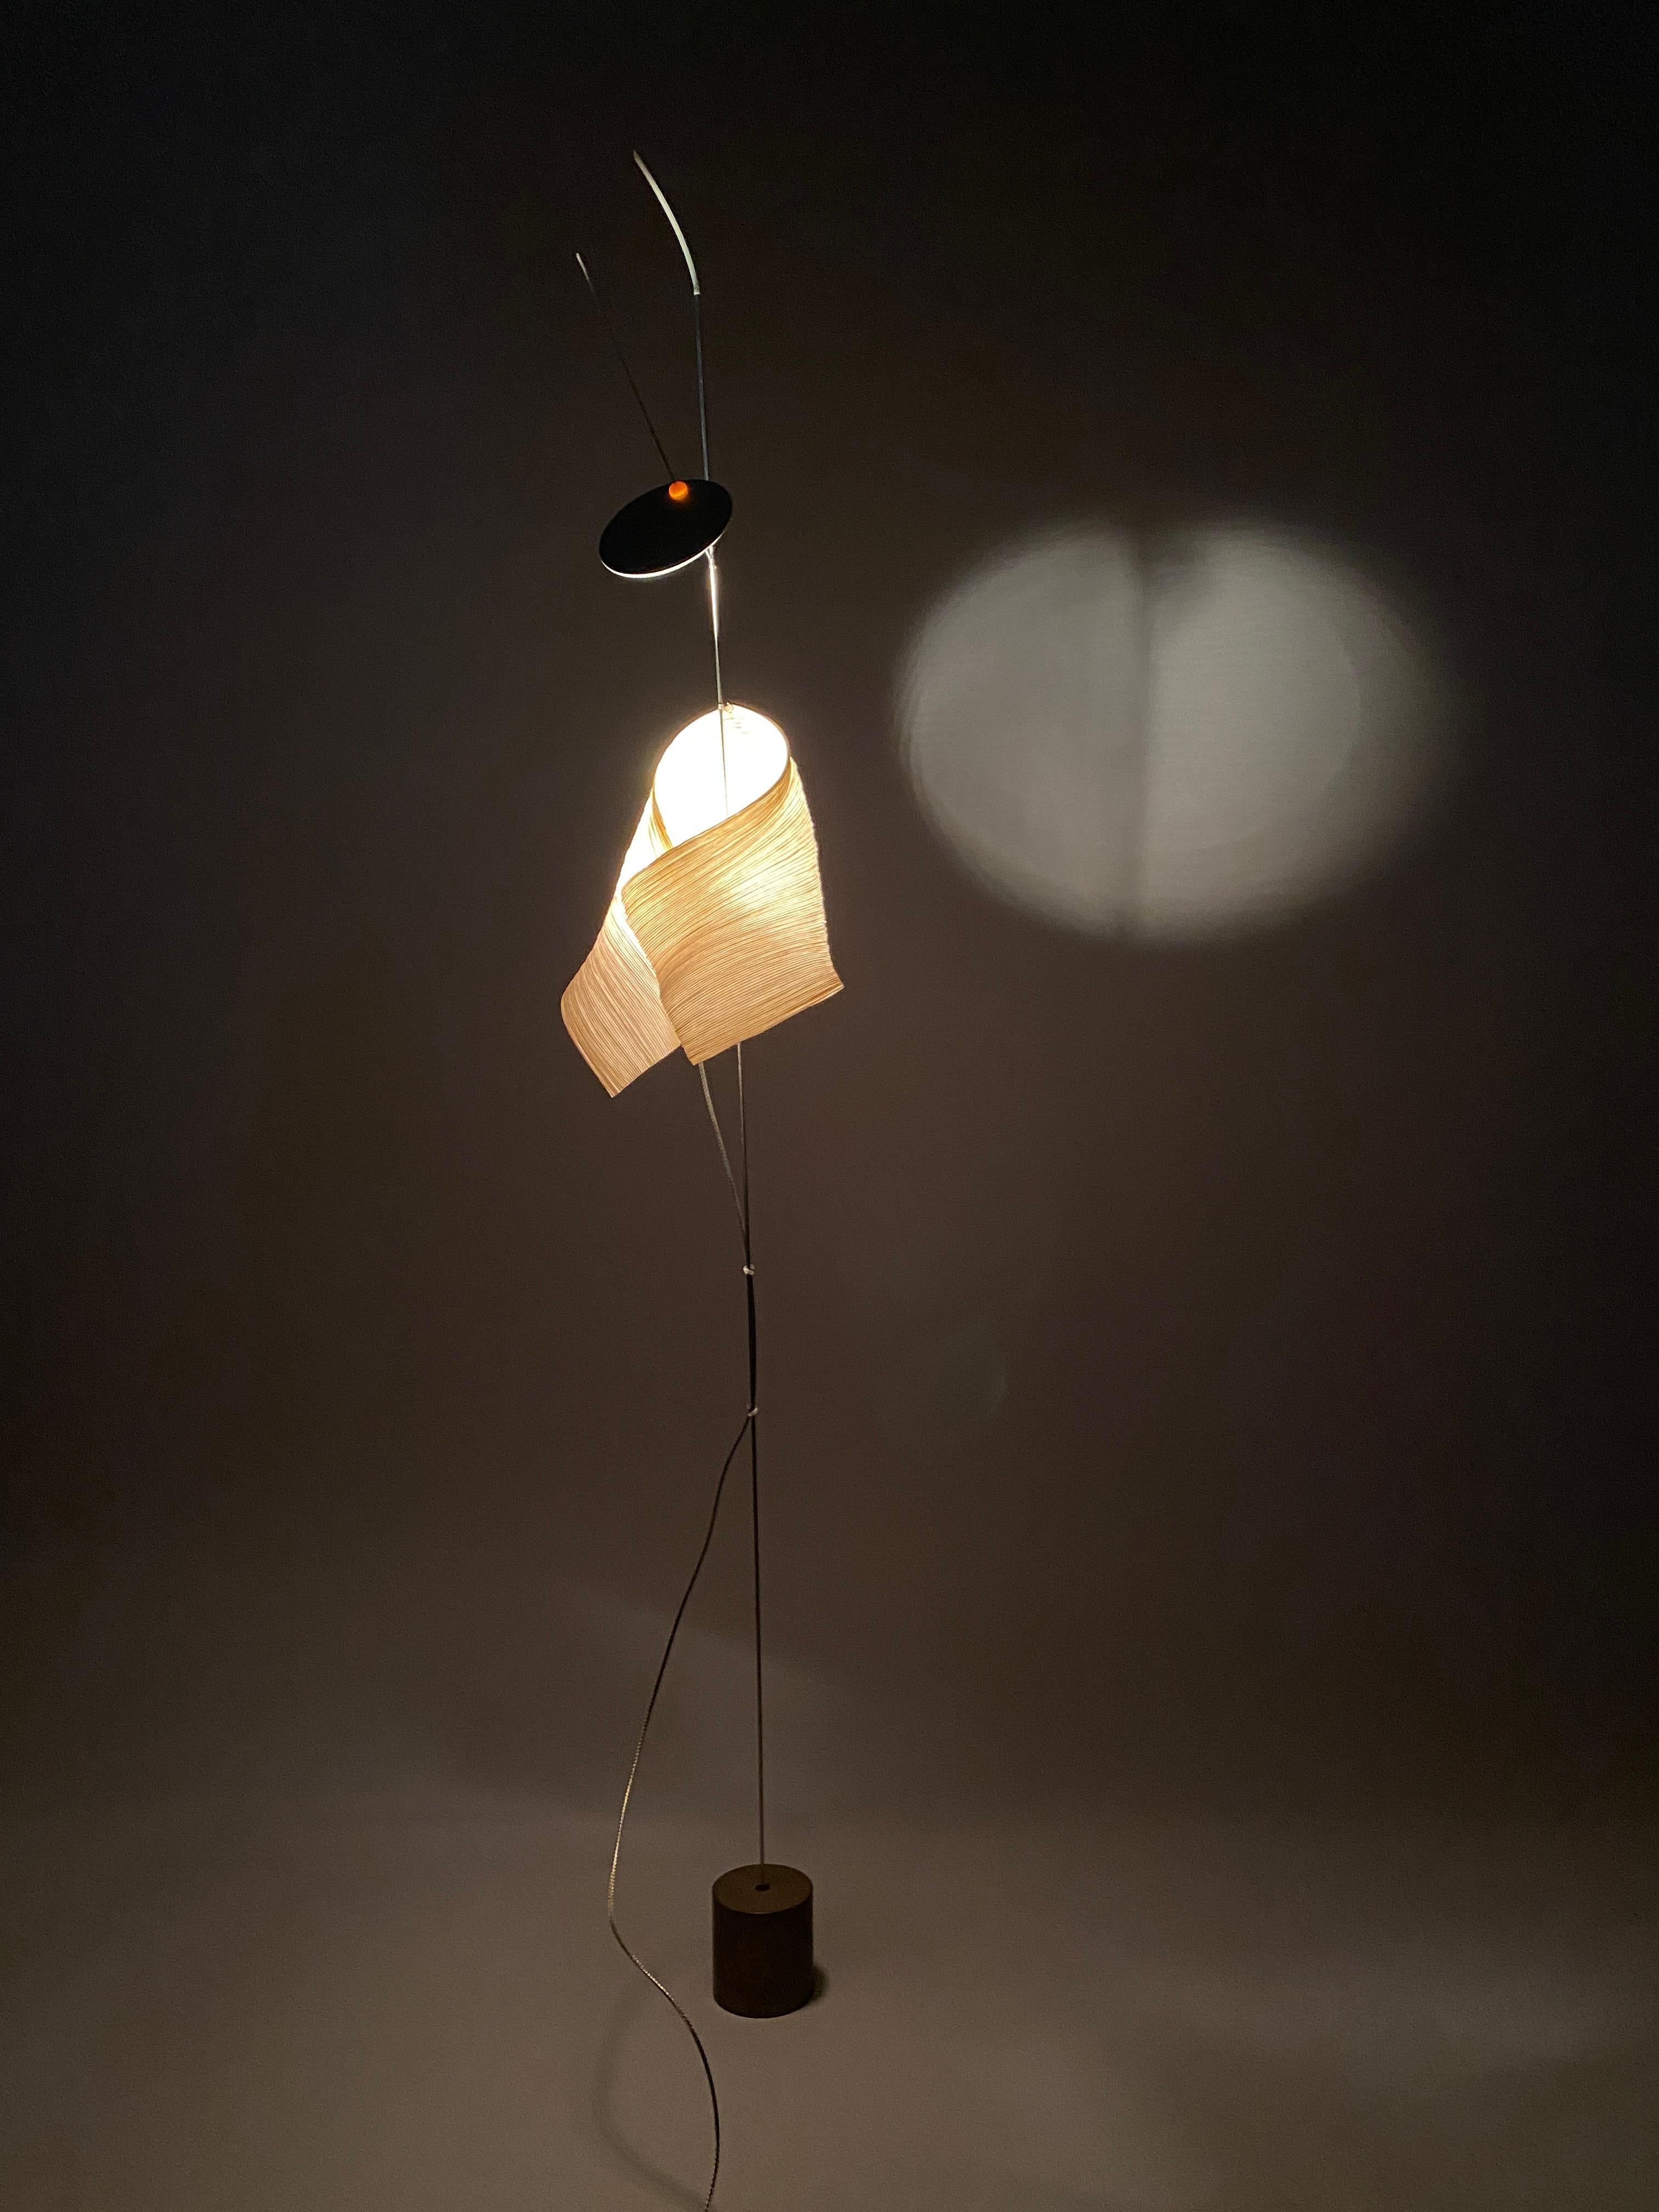 Beleuchten Sie Ihren Raum mit unverwechselbarem Stil: Die Aikaduli-Tischleuchte von 1998

Die Aikaduli Tischleuchte ist ein leuchtendes Meisterwerk, das 1998 den kreativen Köpfen von Ingo Maurer und Dagmar Mombach entsprungen ist. Diese Lampe ist